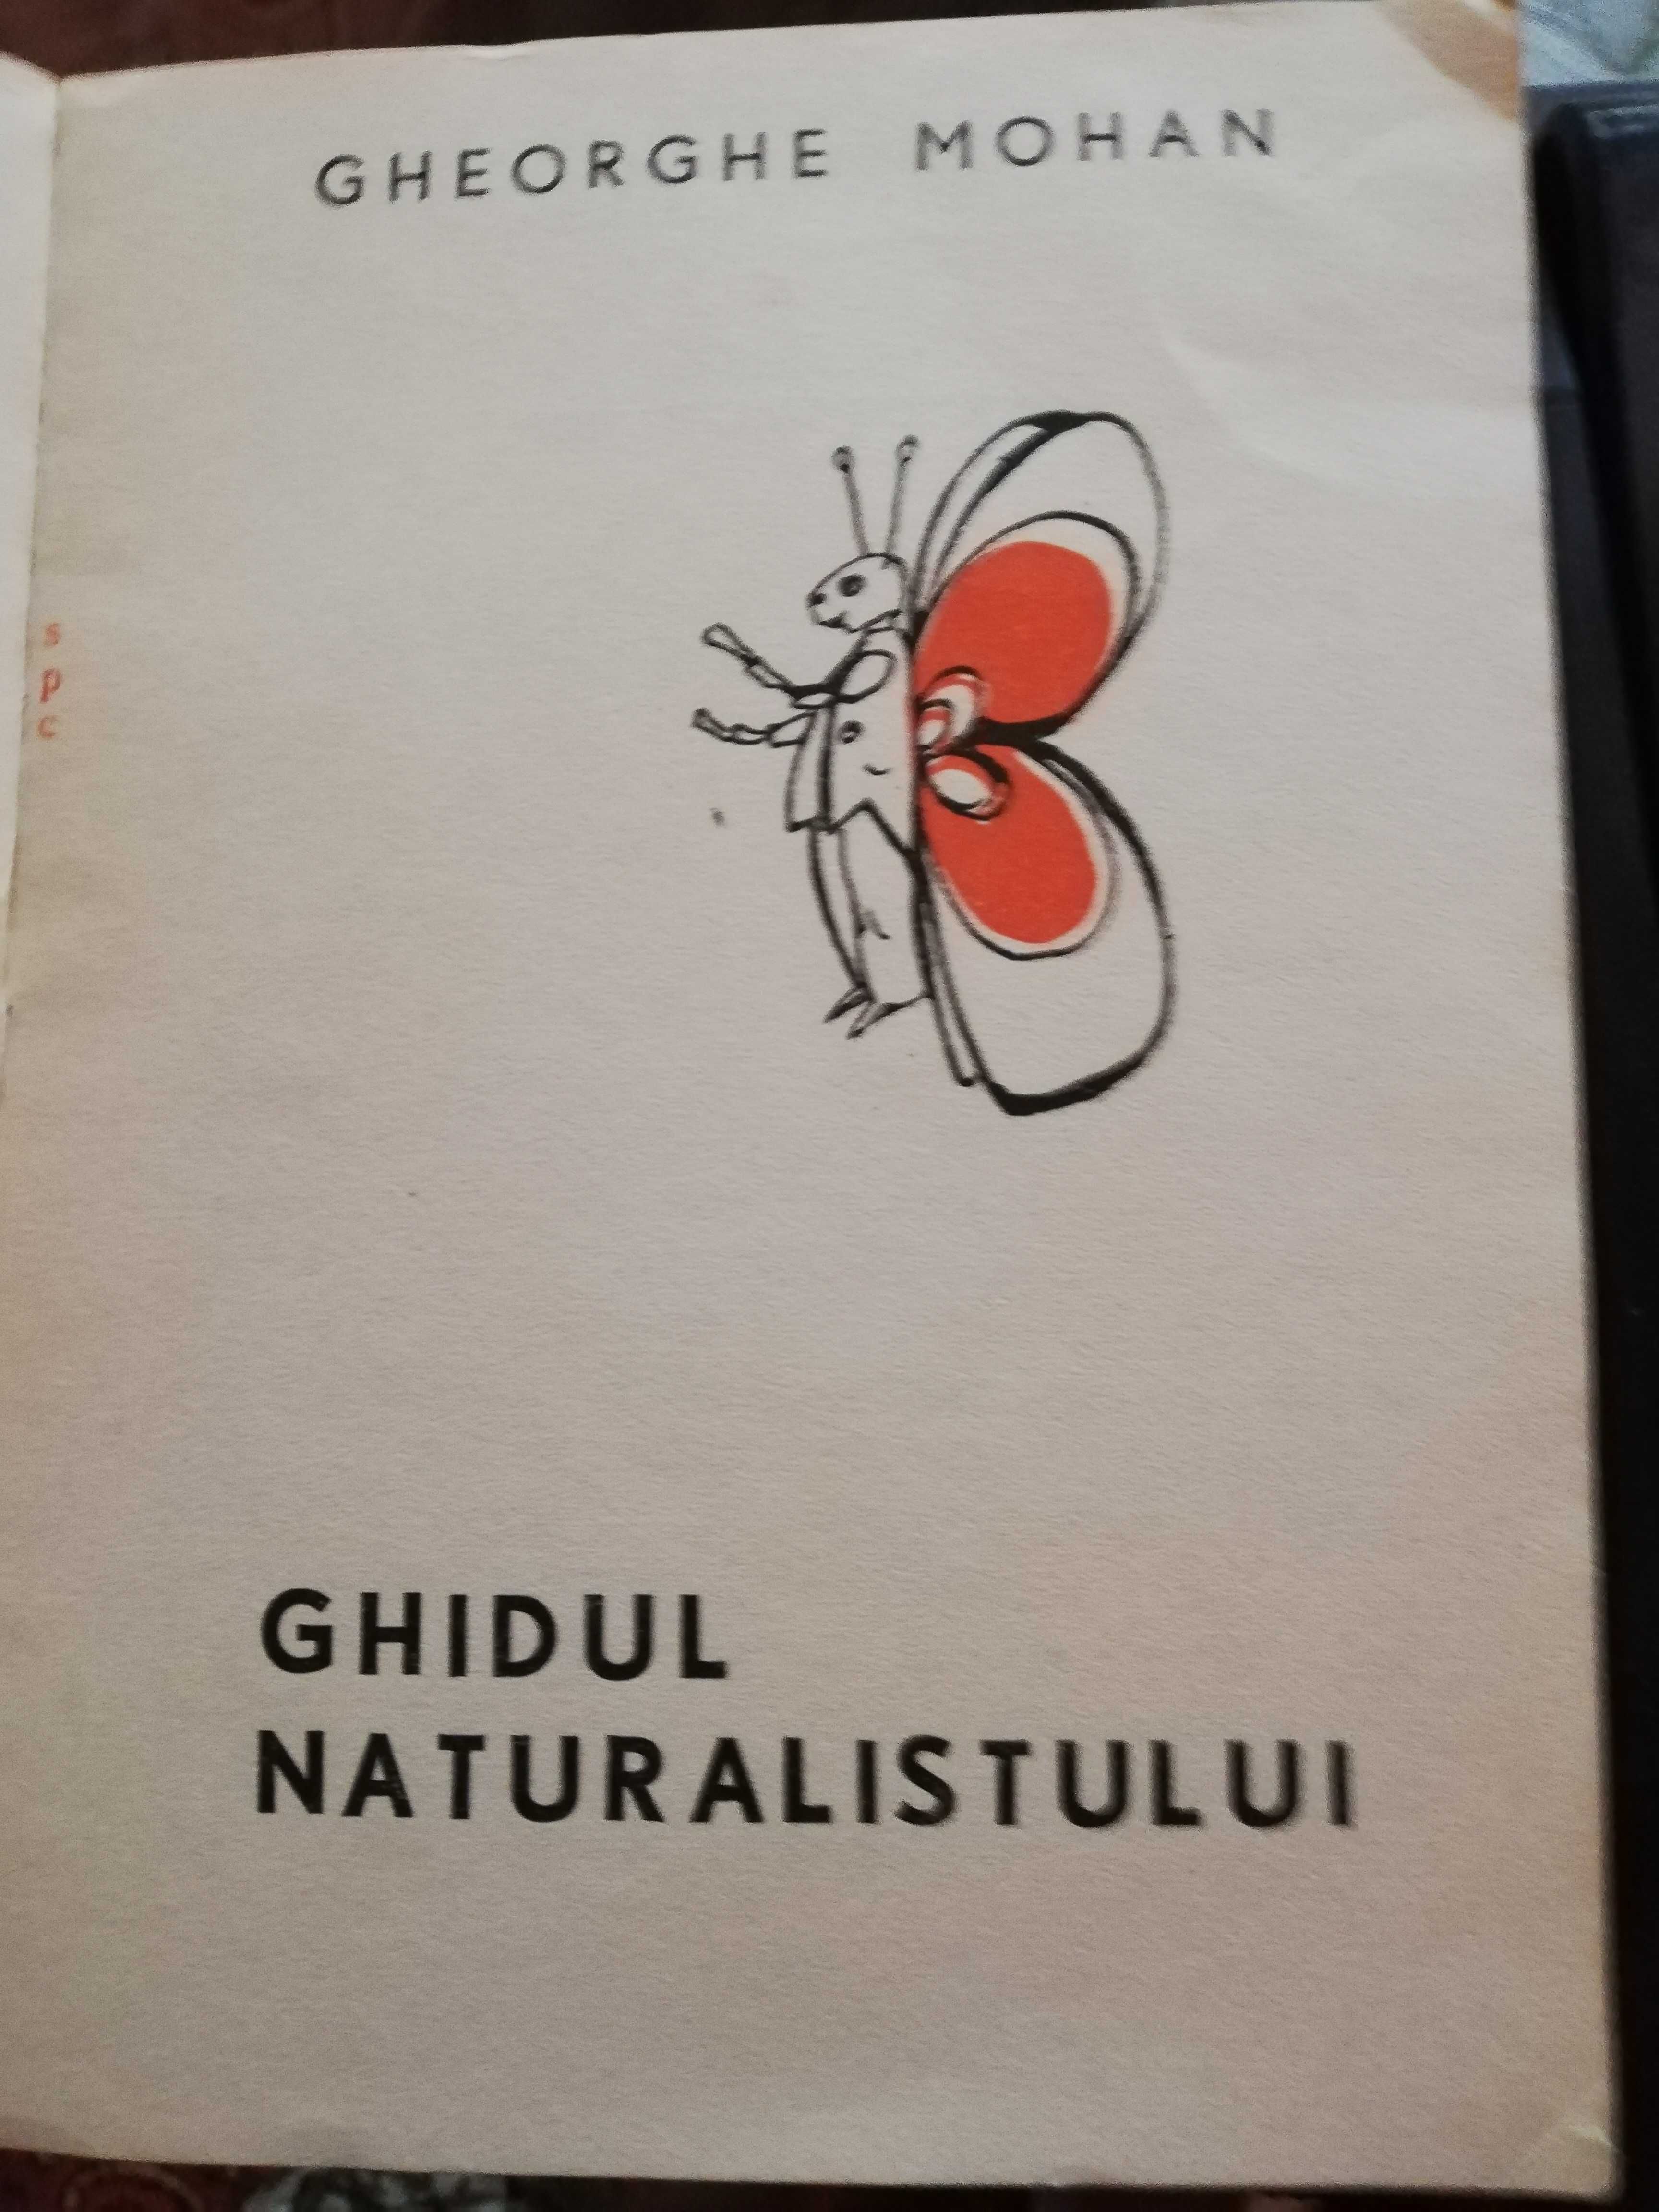 Ghidul naturalistului - Gh. Mohan